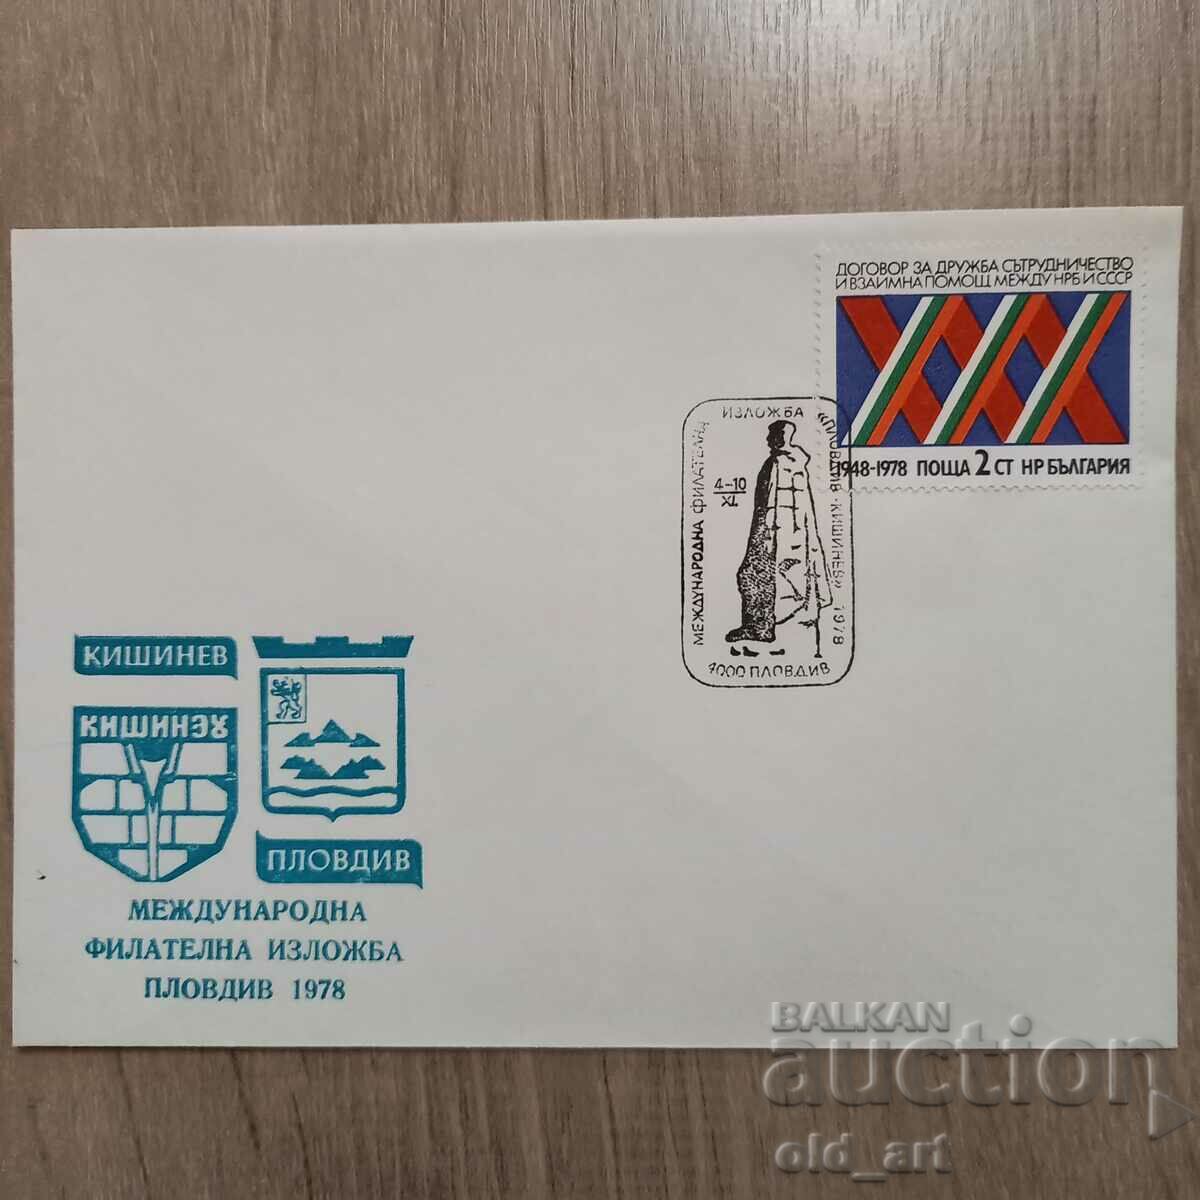 Plic postal - Int. expoziție filatelica Plovdiv 78